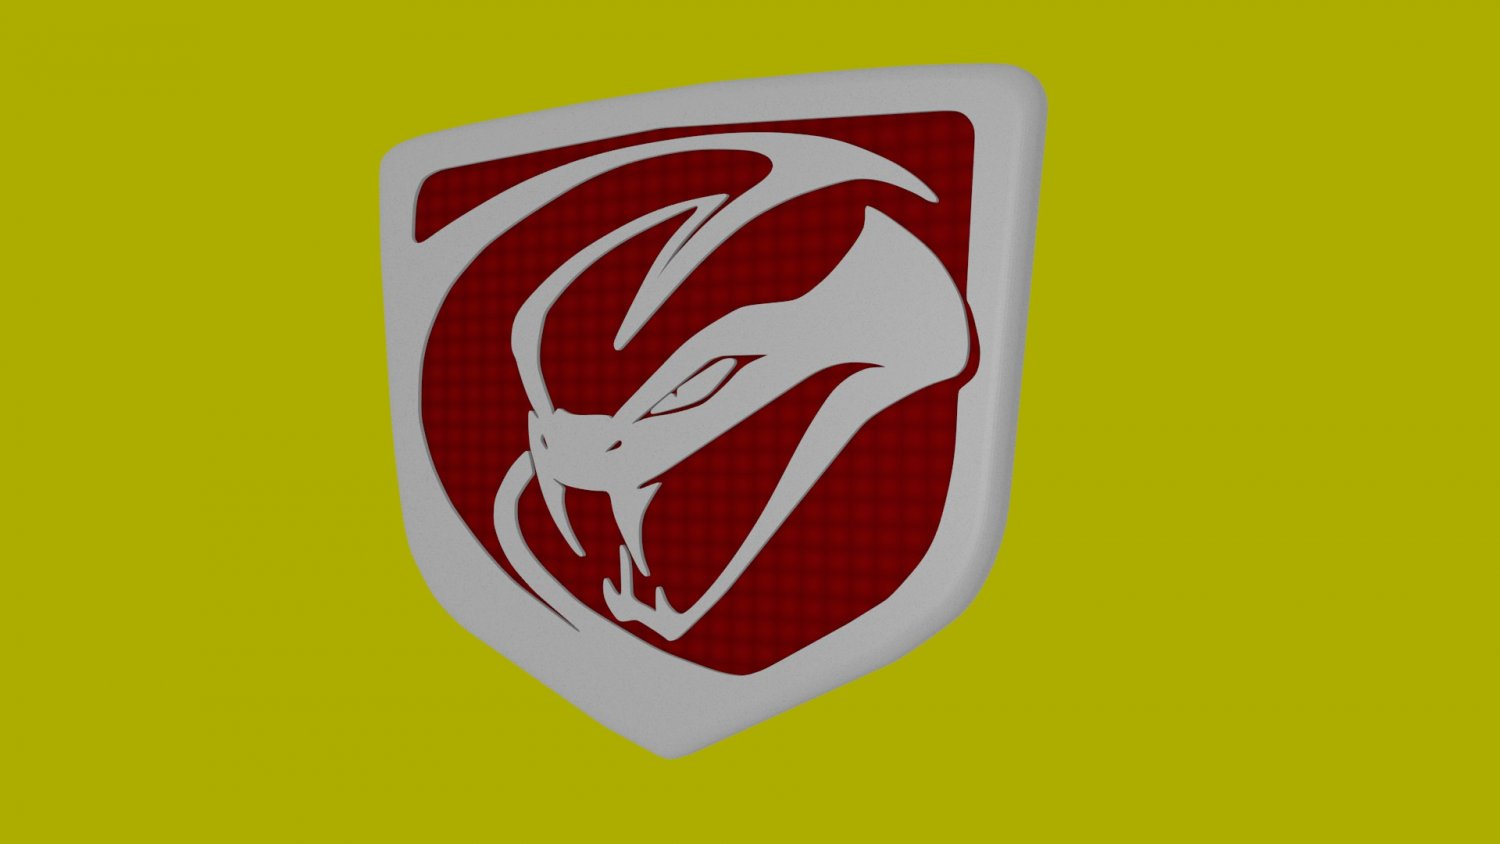 viper stryker logo